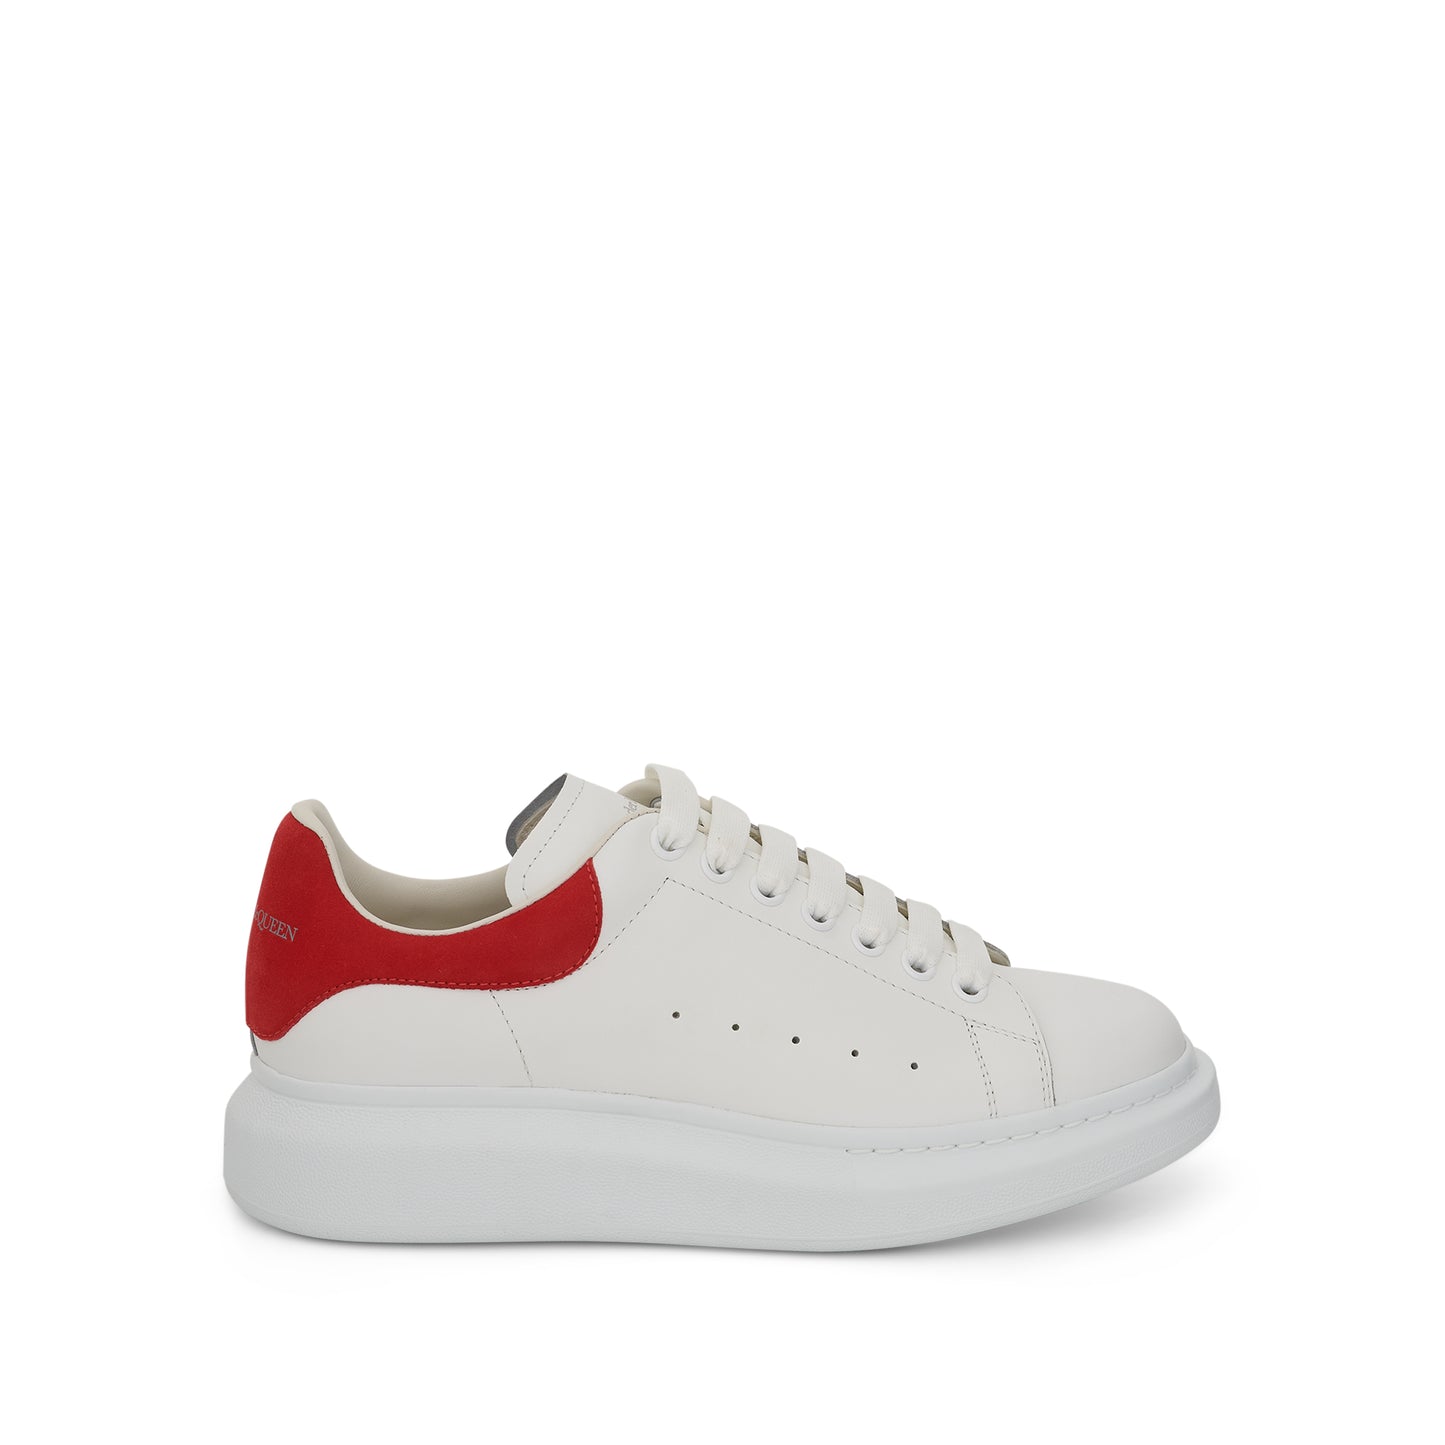 Larry Oversized Sneaker in White/Lust Red